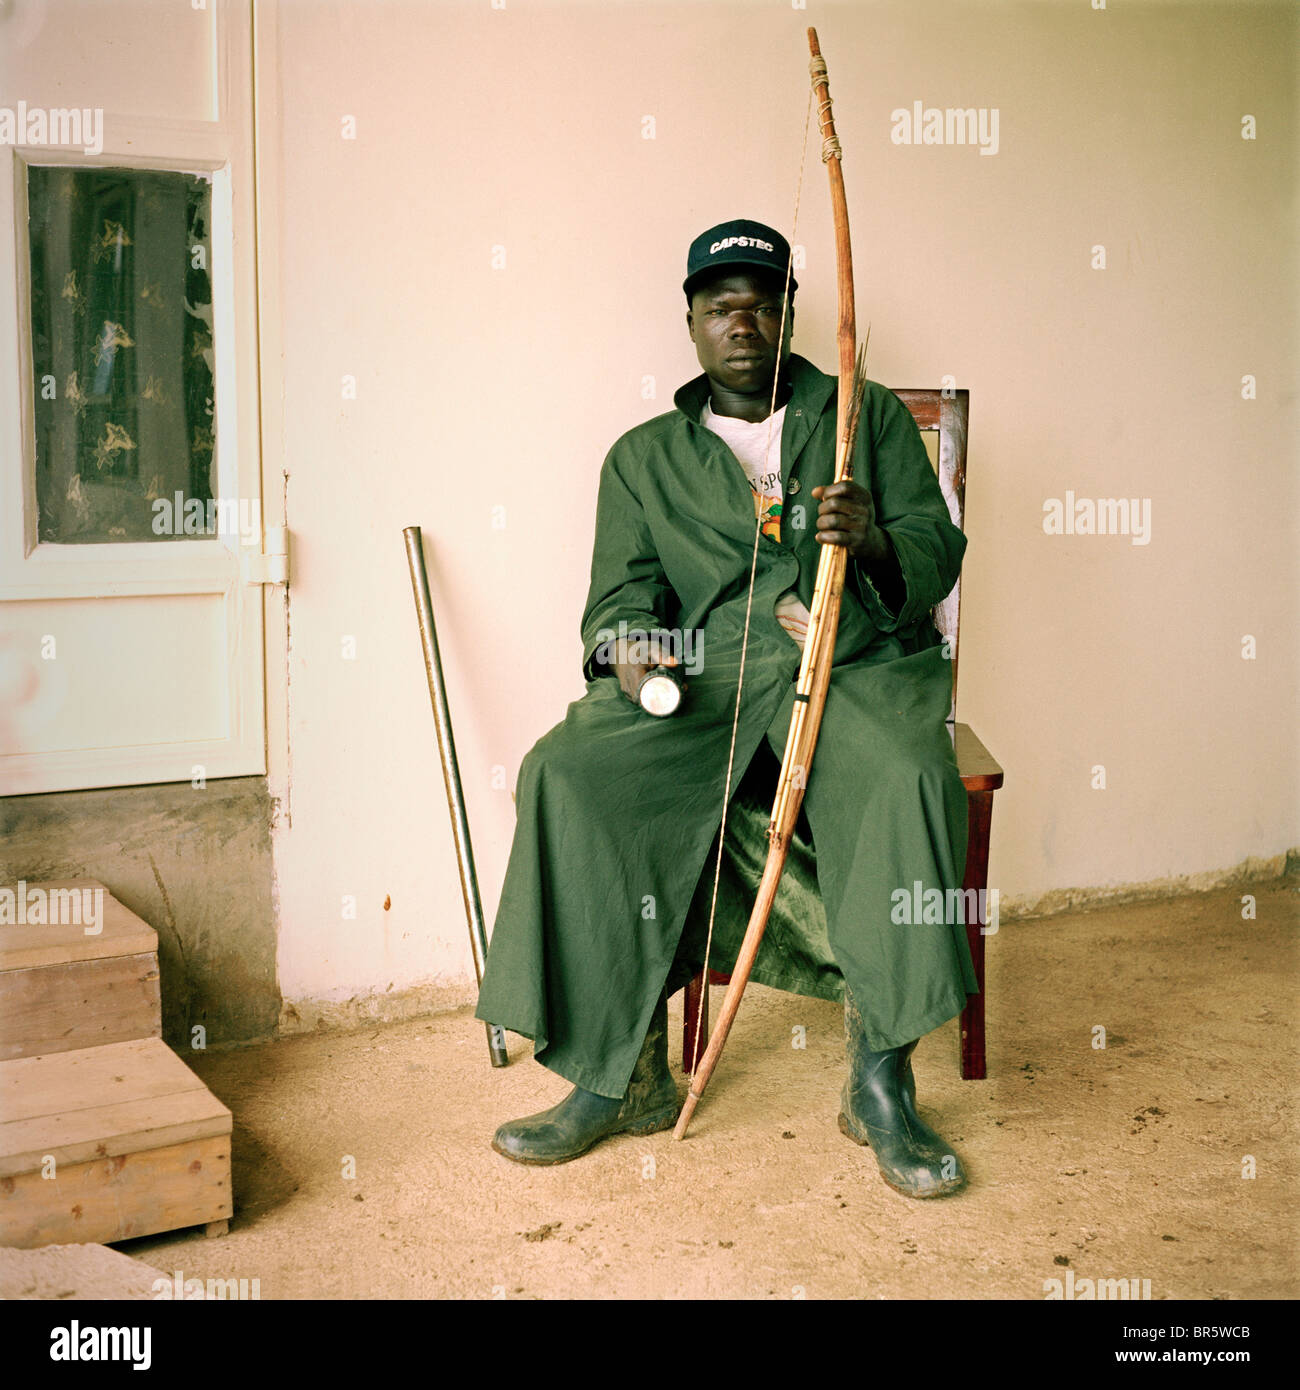 Michael Ezangu, guardia di sicurezza al Kulika Lutisi training center farm. Egli utilizza un arco e frecce per proteggere l'azienda. Foto Stock